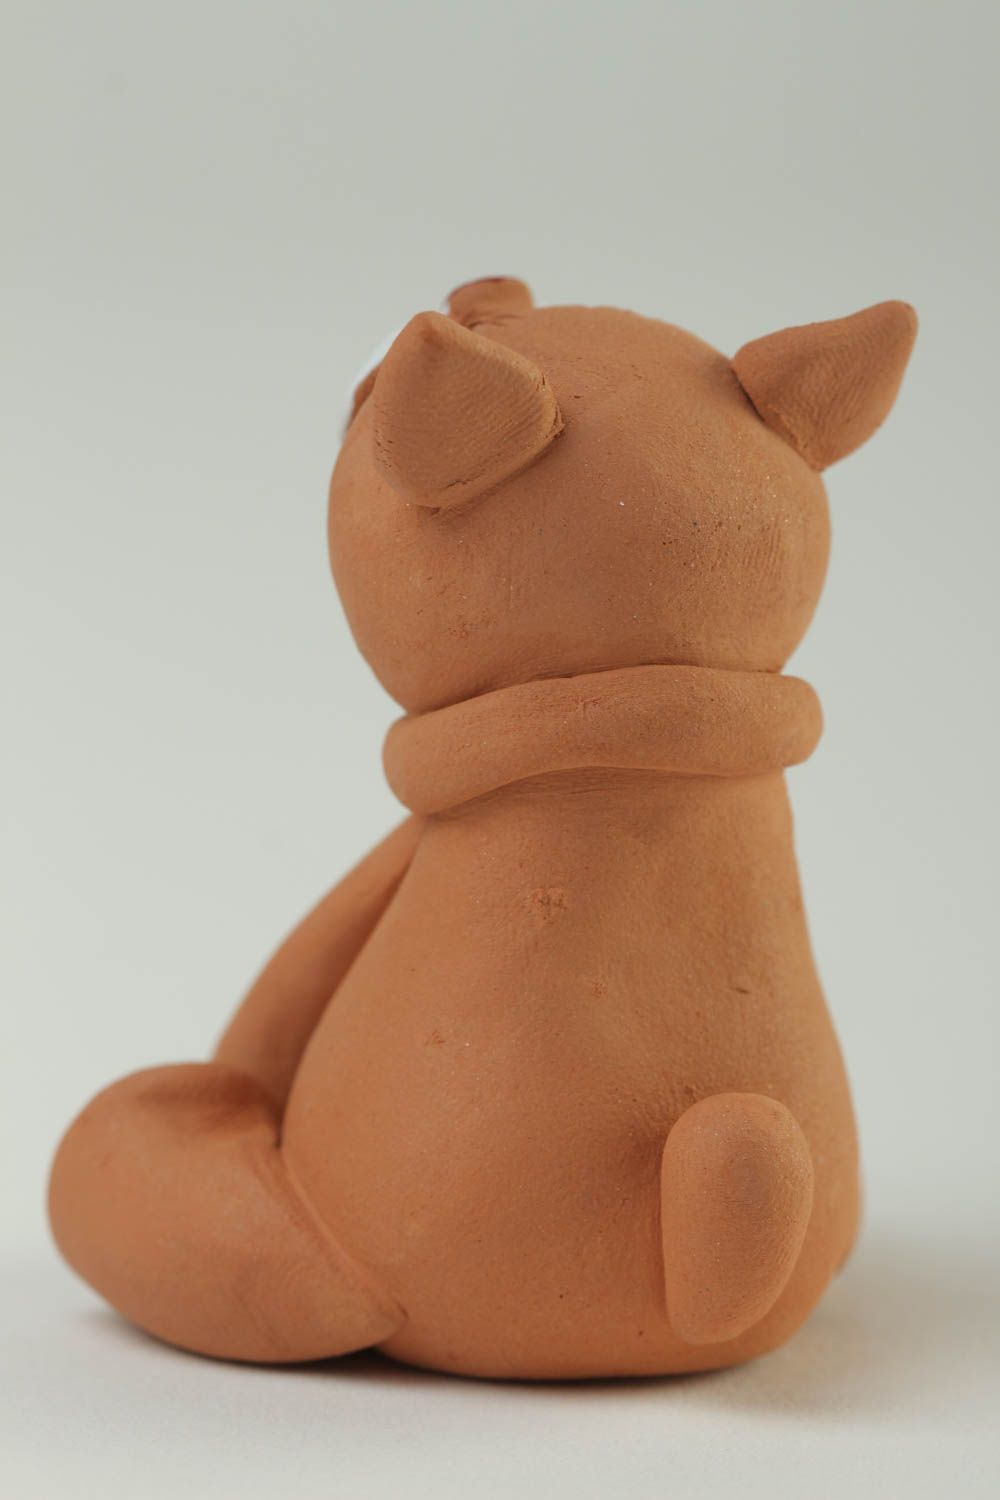 Статуэтка ручной работы глиняная статуэтка фигурка животного расписная Кот фото 4